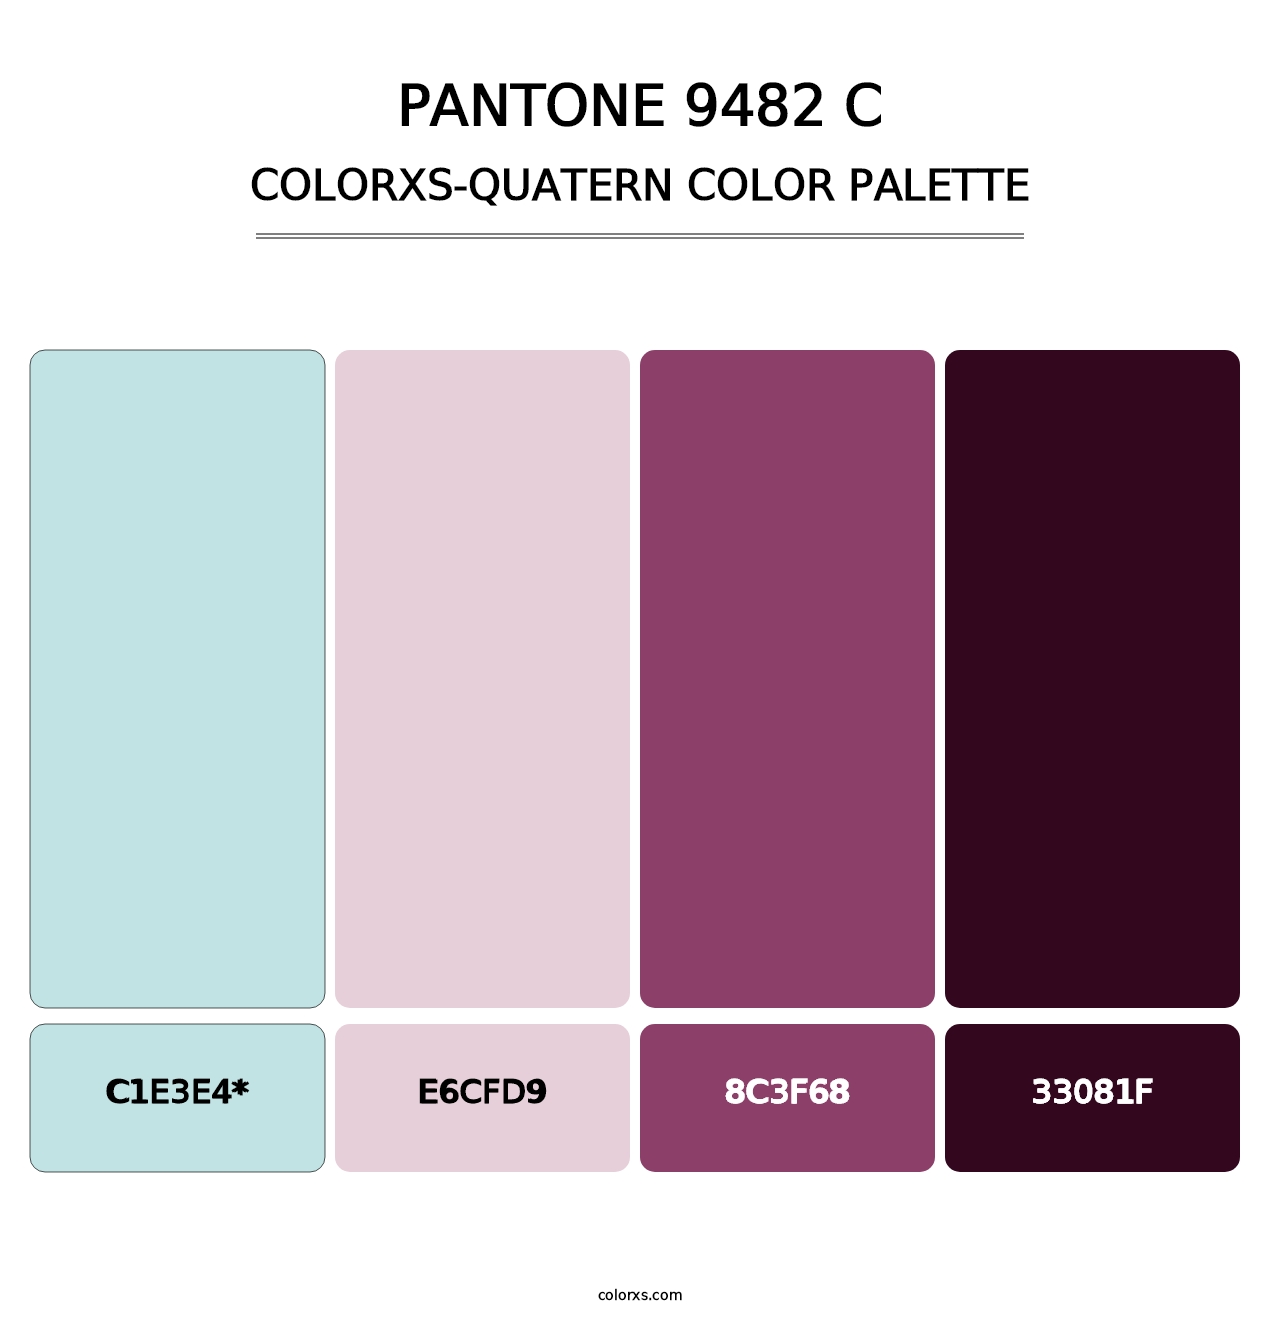 PANTONE 9482 C - Colorxs Quatern Palette